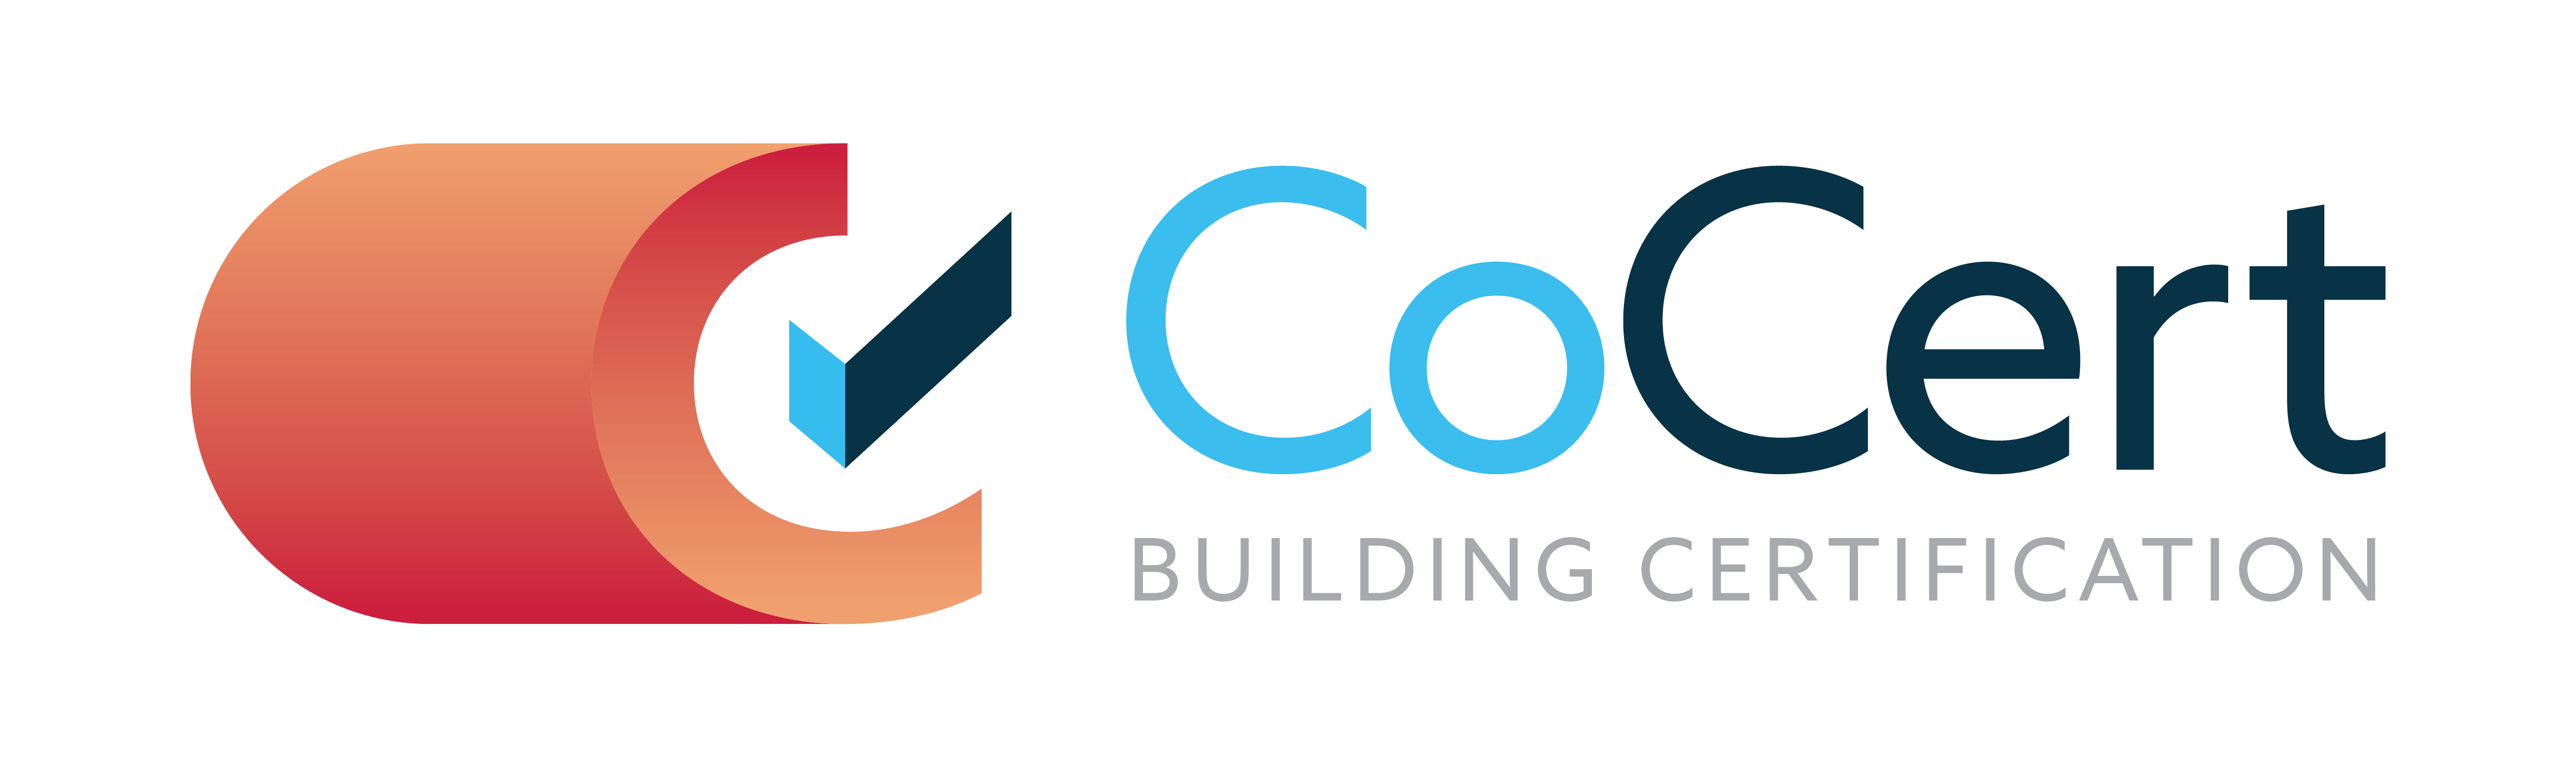 CoCert Building Certification